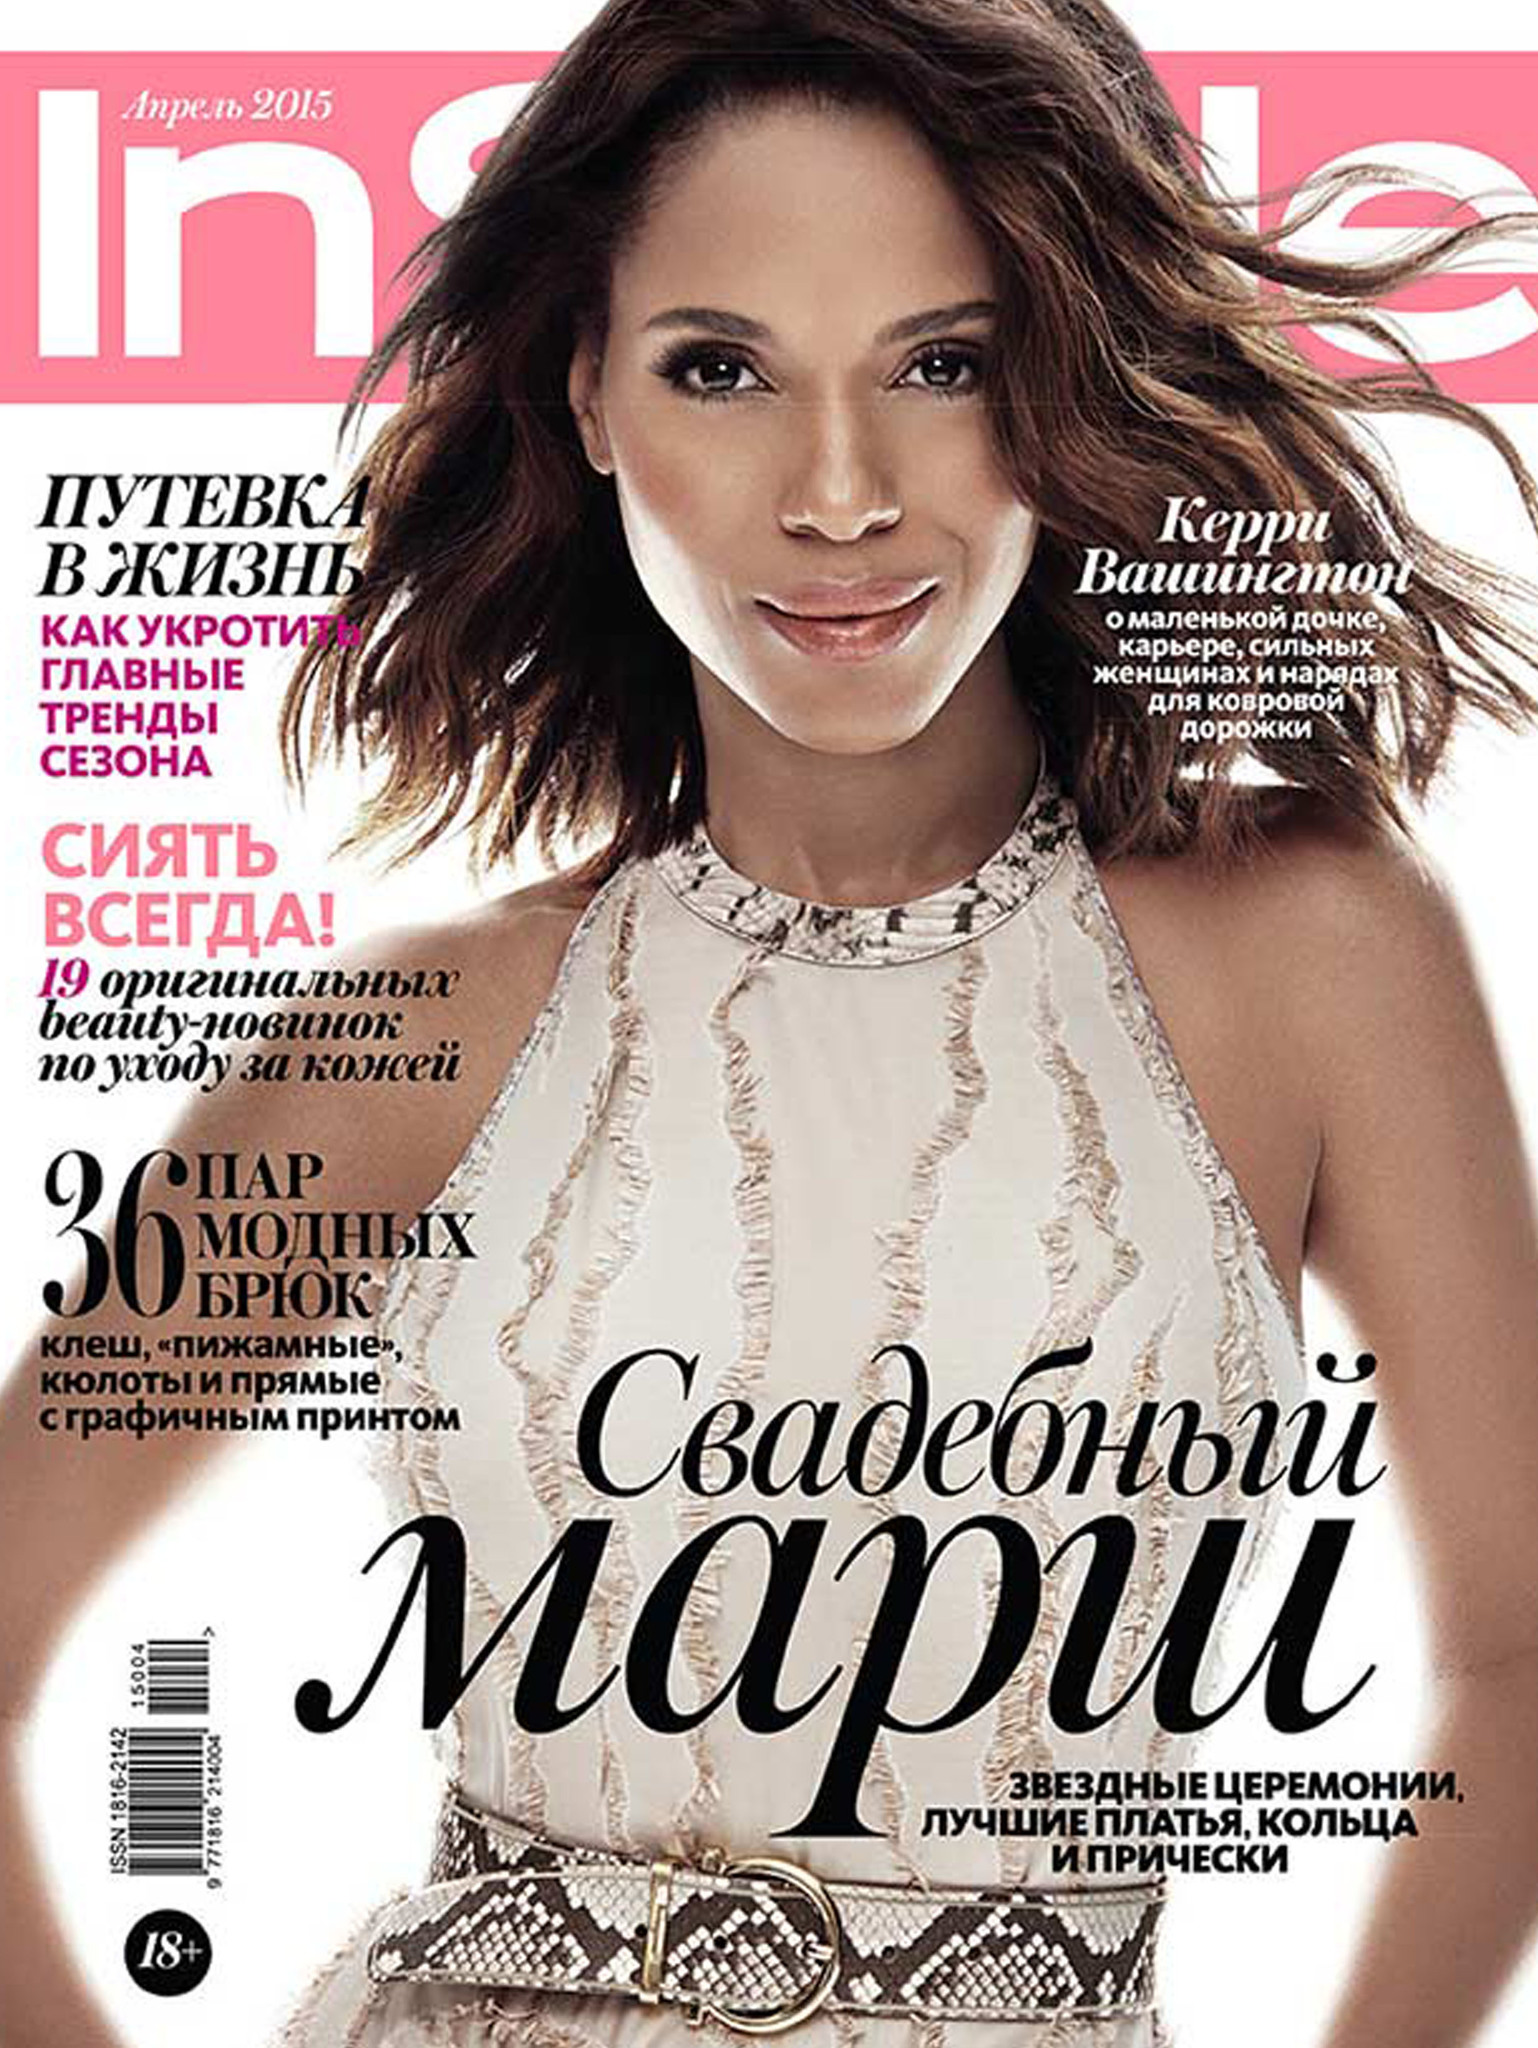 Стильные украшения от Modbrand.ru в журнале InStyle апрель 2015 г.